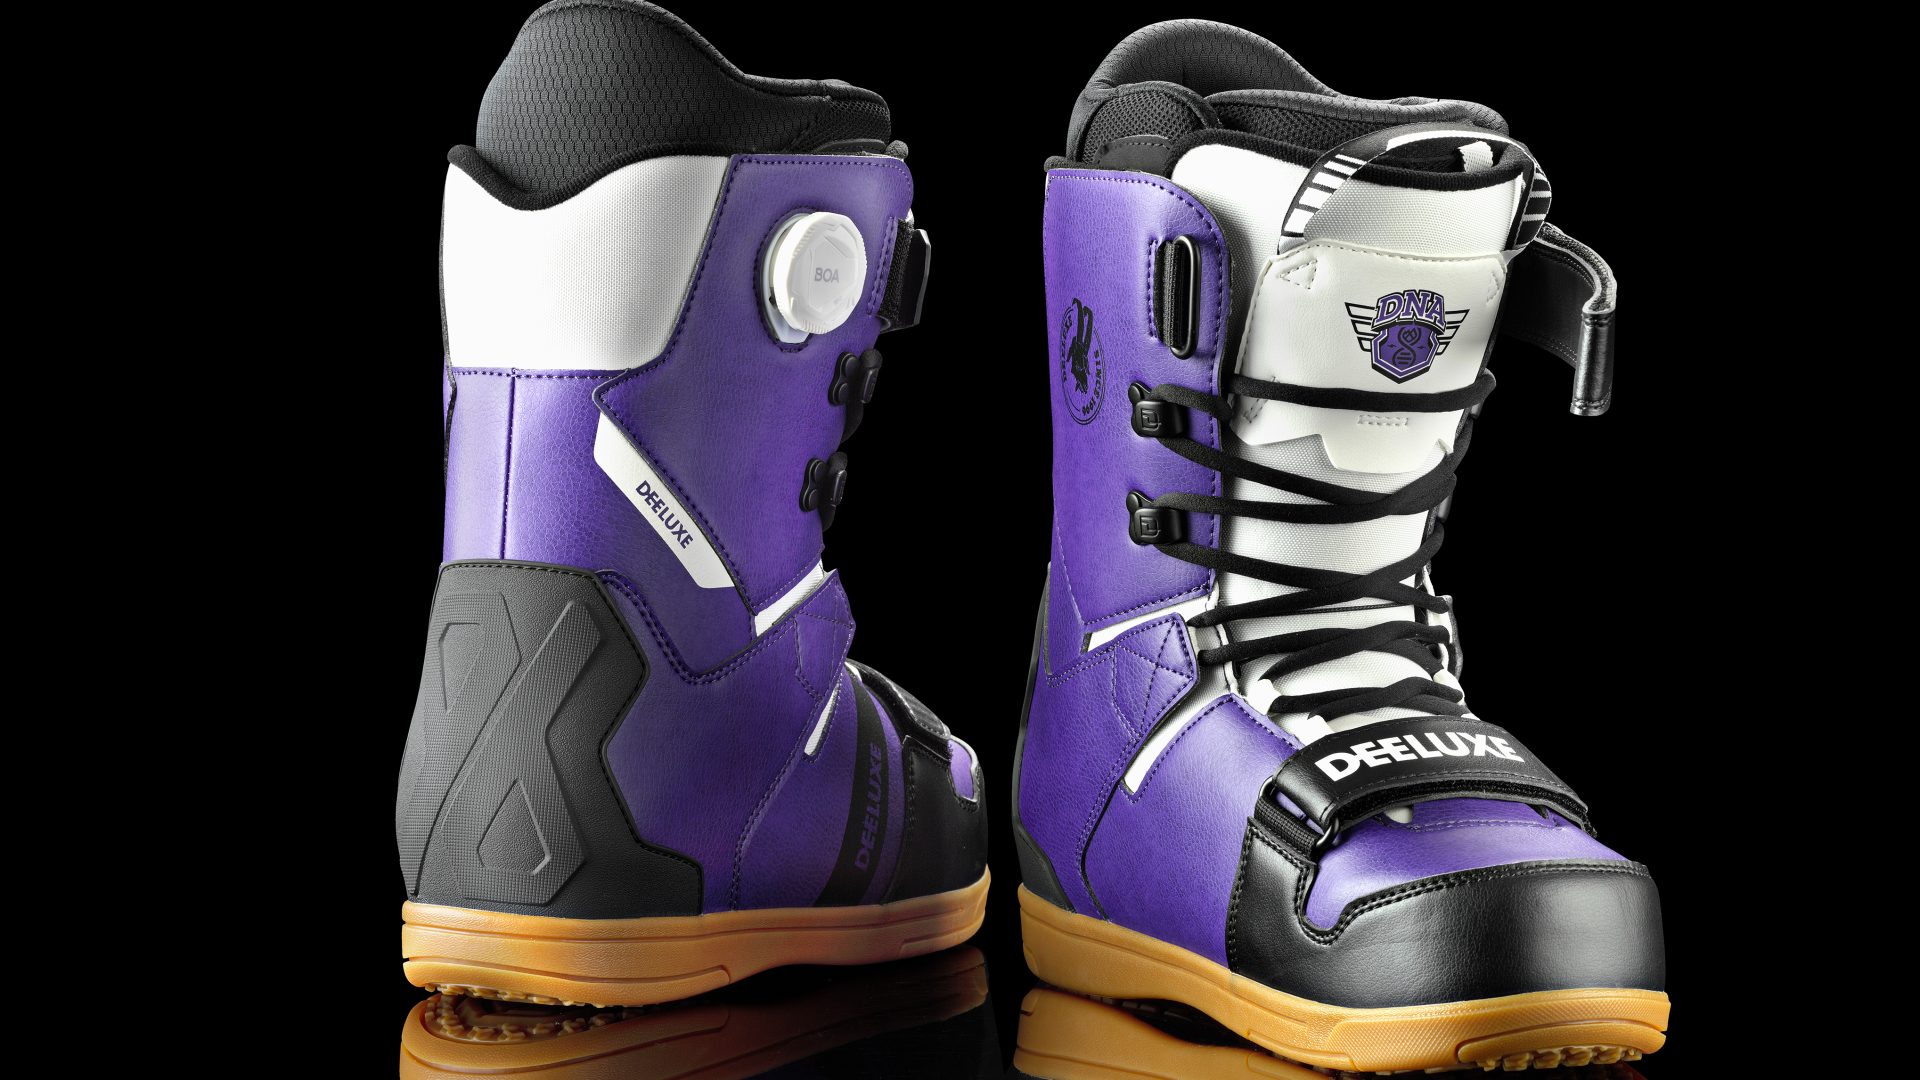 Deeluxe DNA Pro snowboard boot - New Product - Boardsport SOURCE